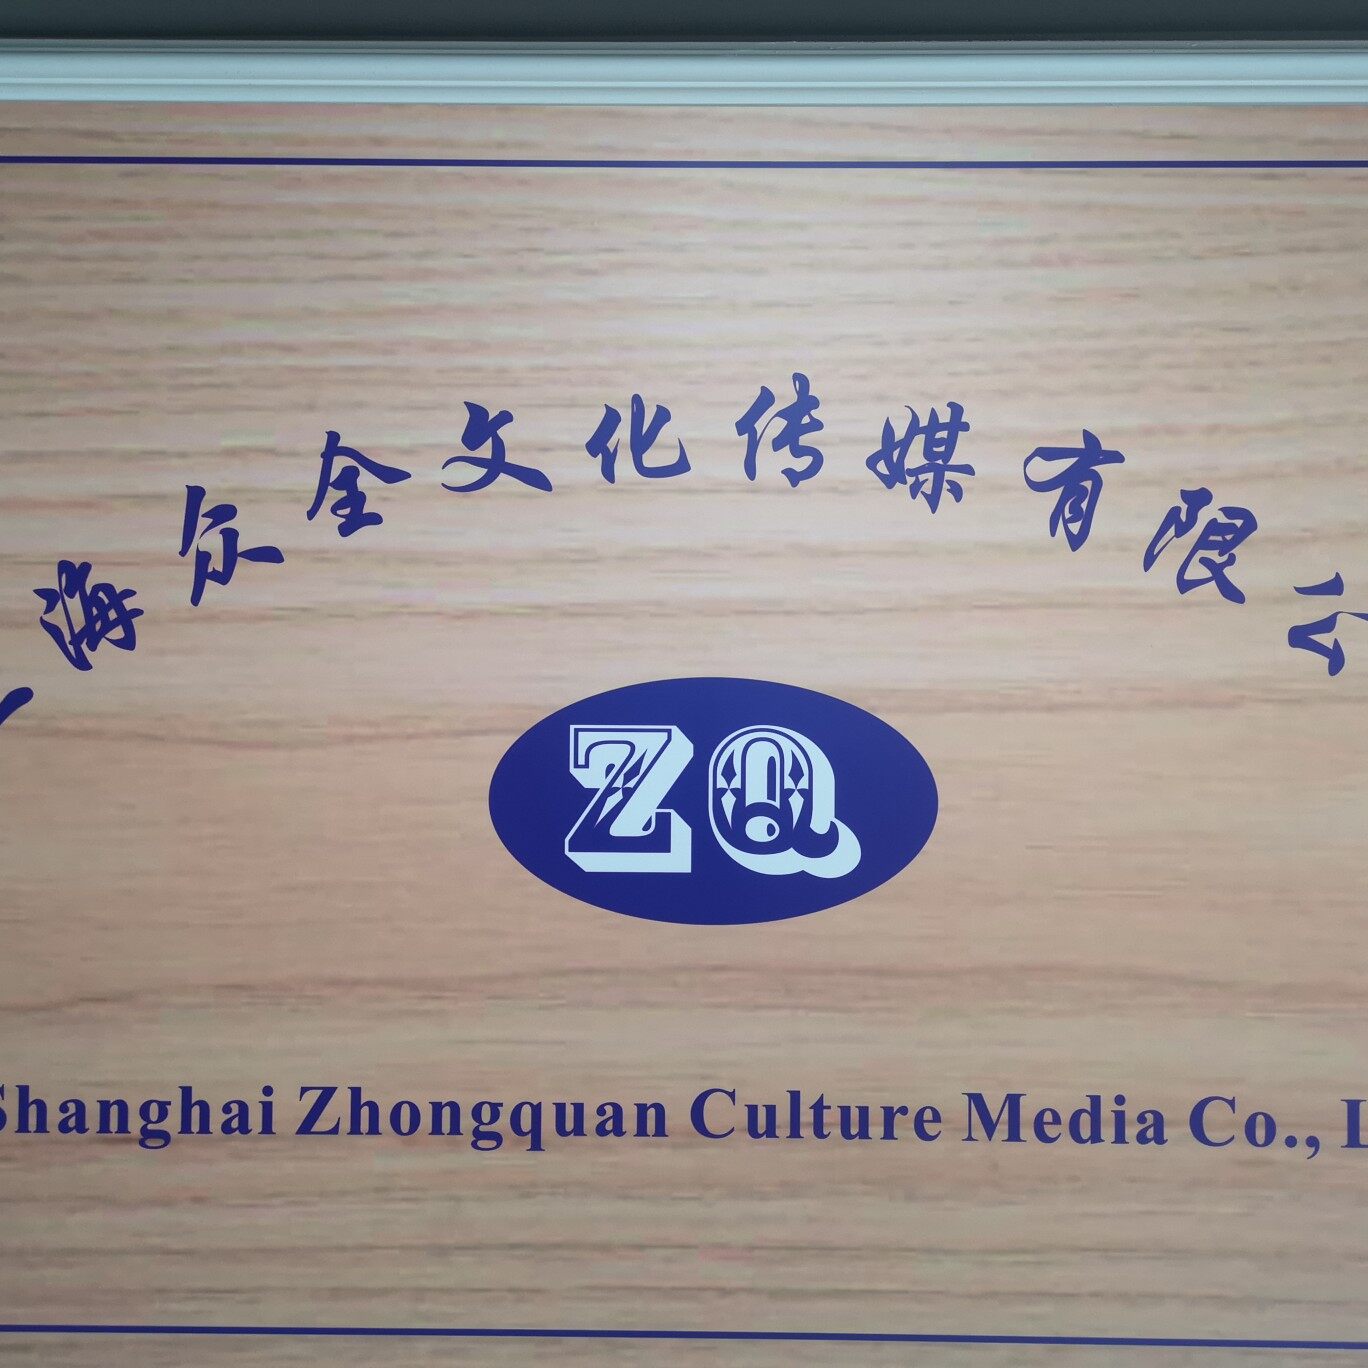 上海众全文化传媒有限公司logo